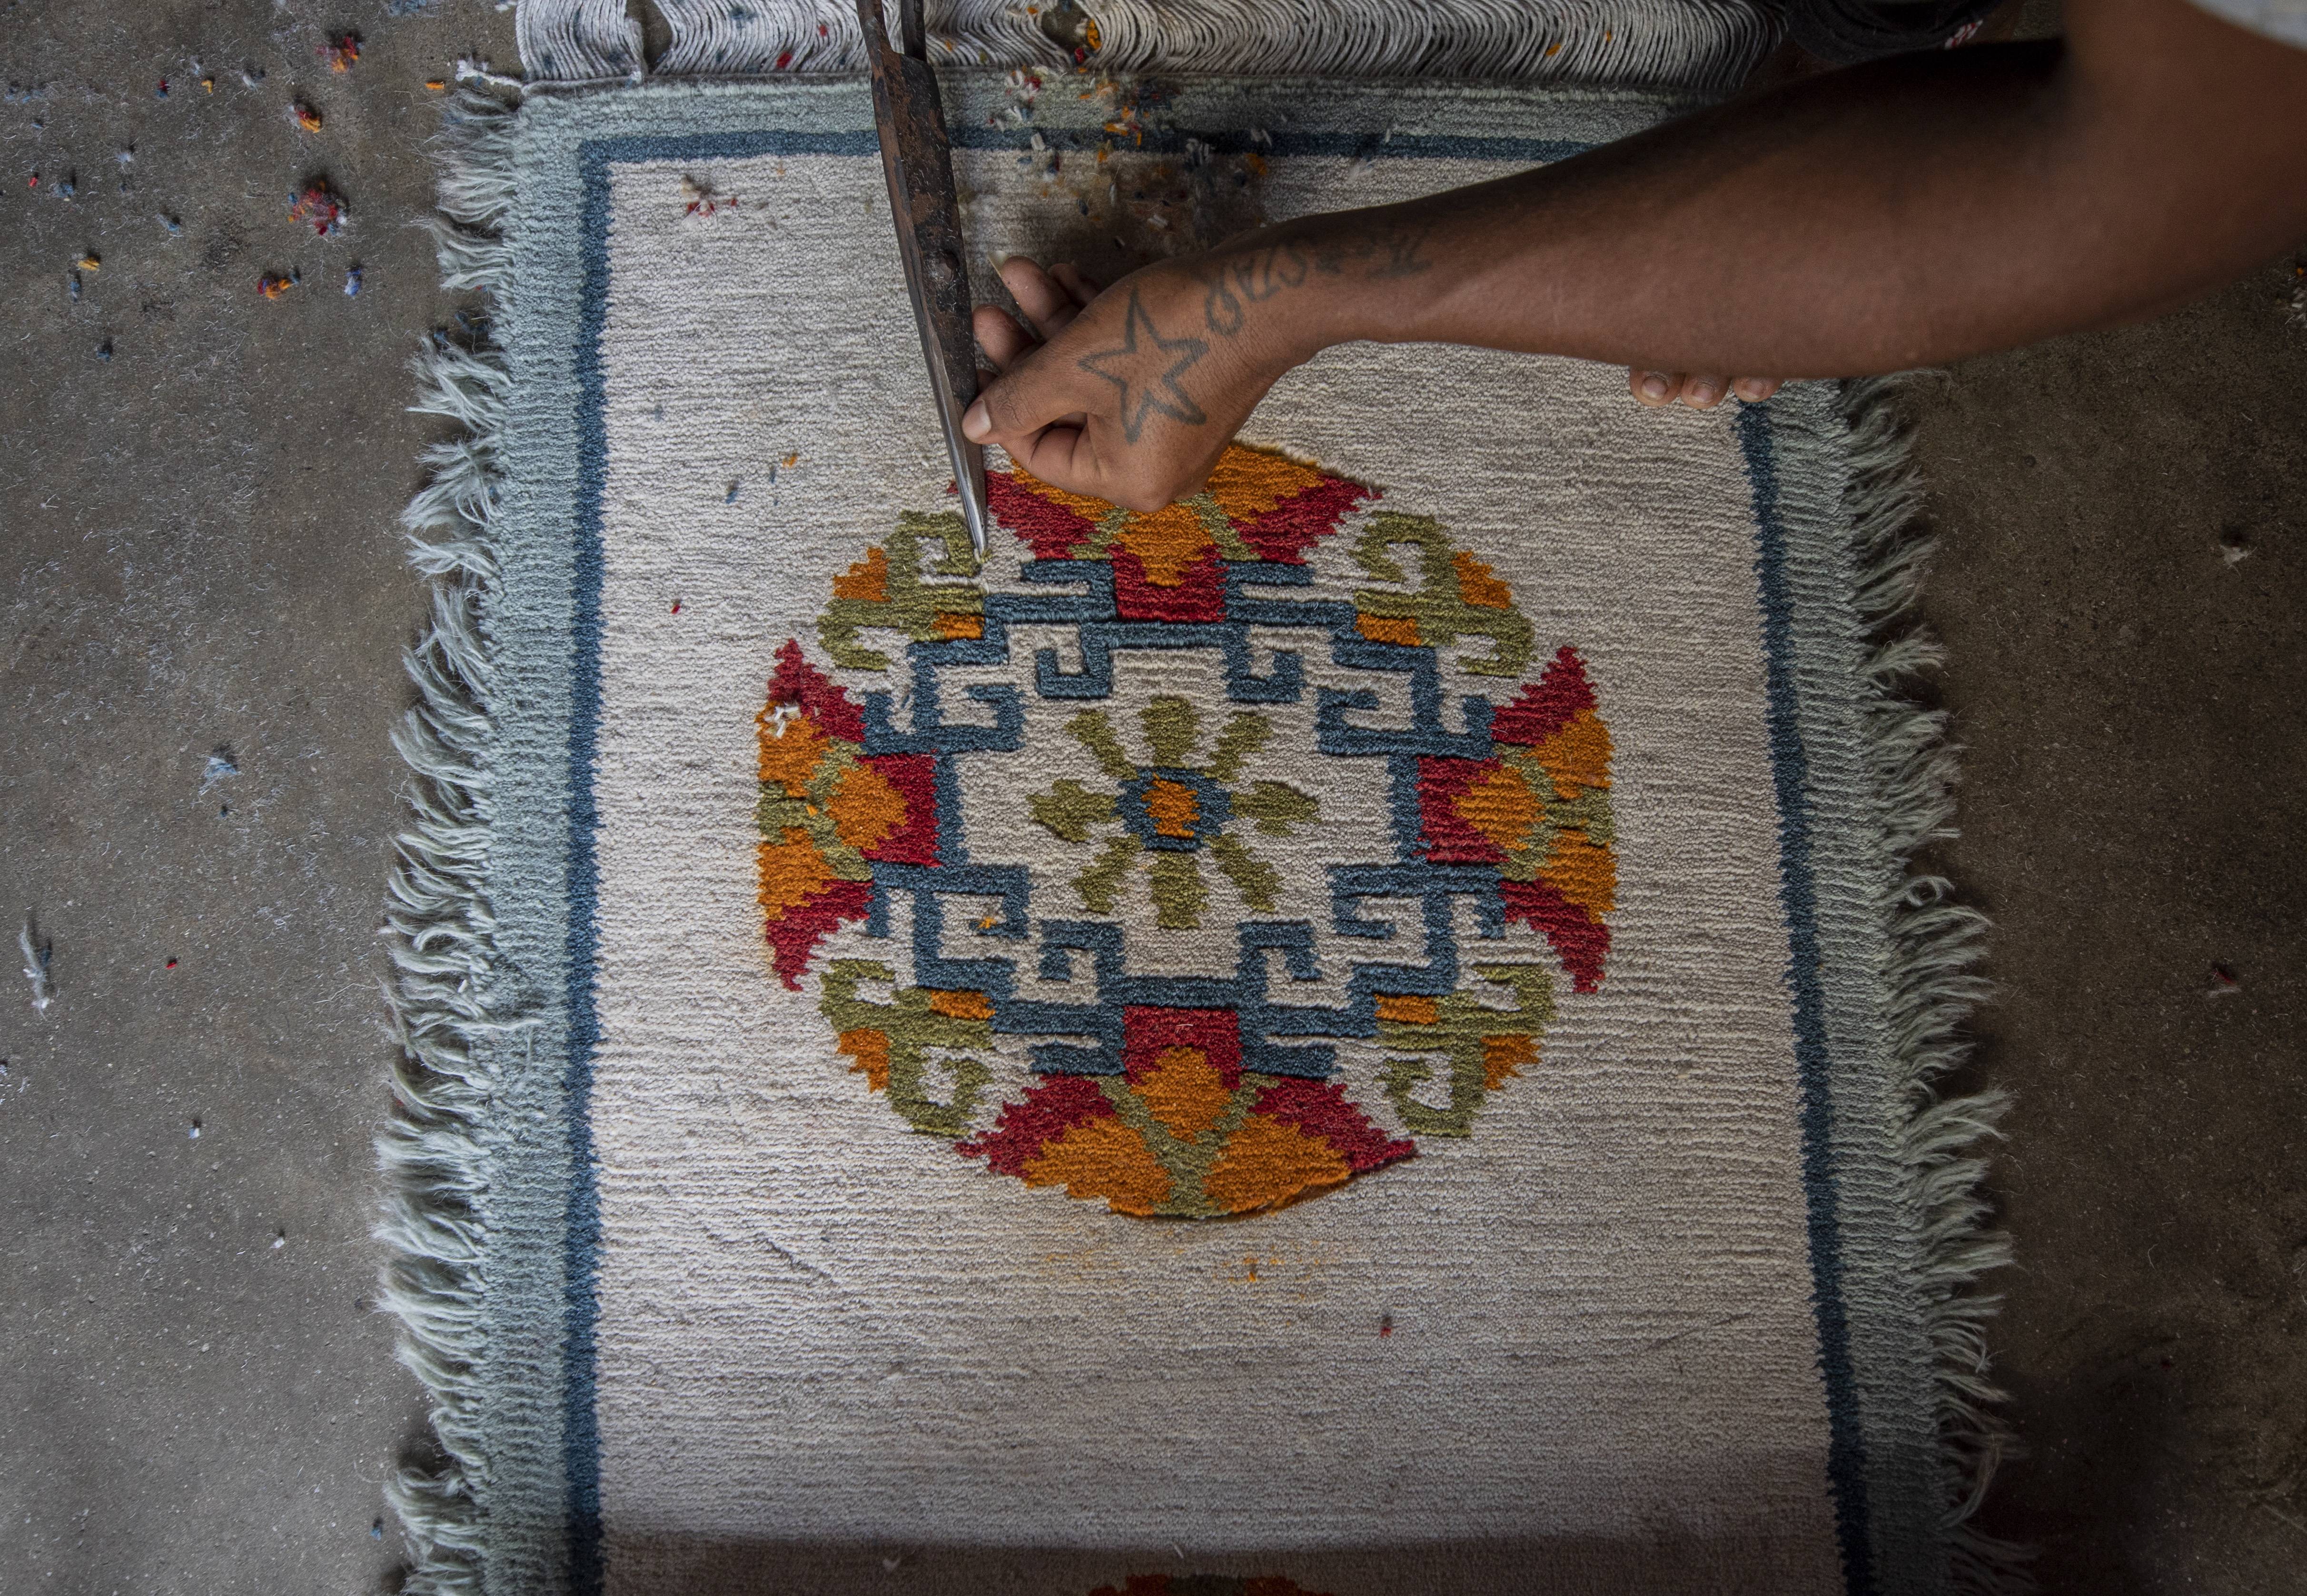 7月30日,在尼泊尔首都加德满都的一家手工地毯厂,一名工人在制作地毯.